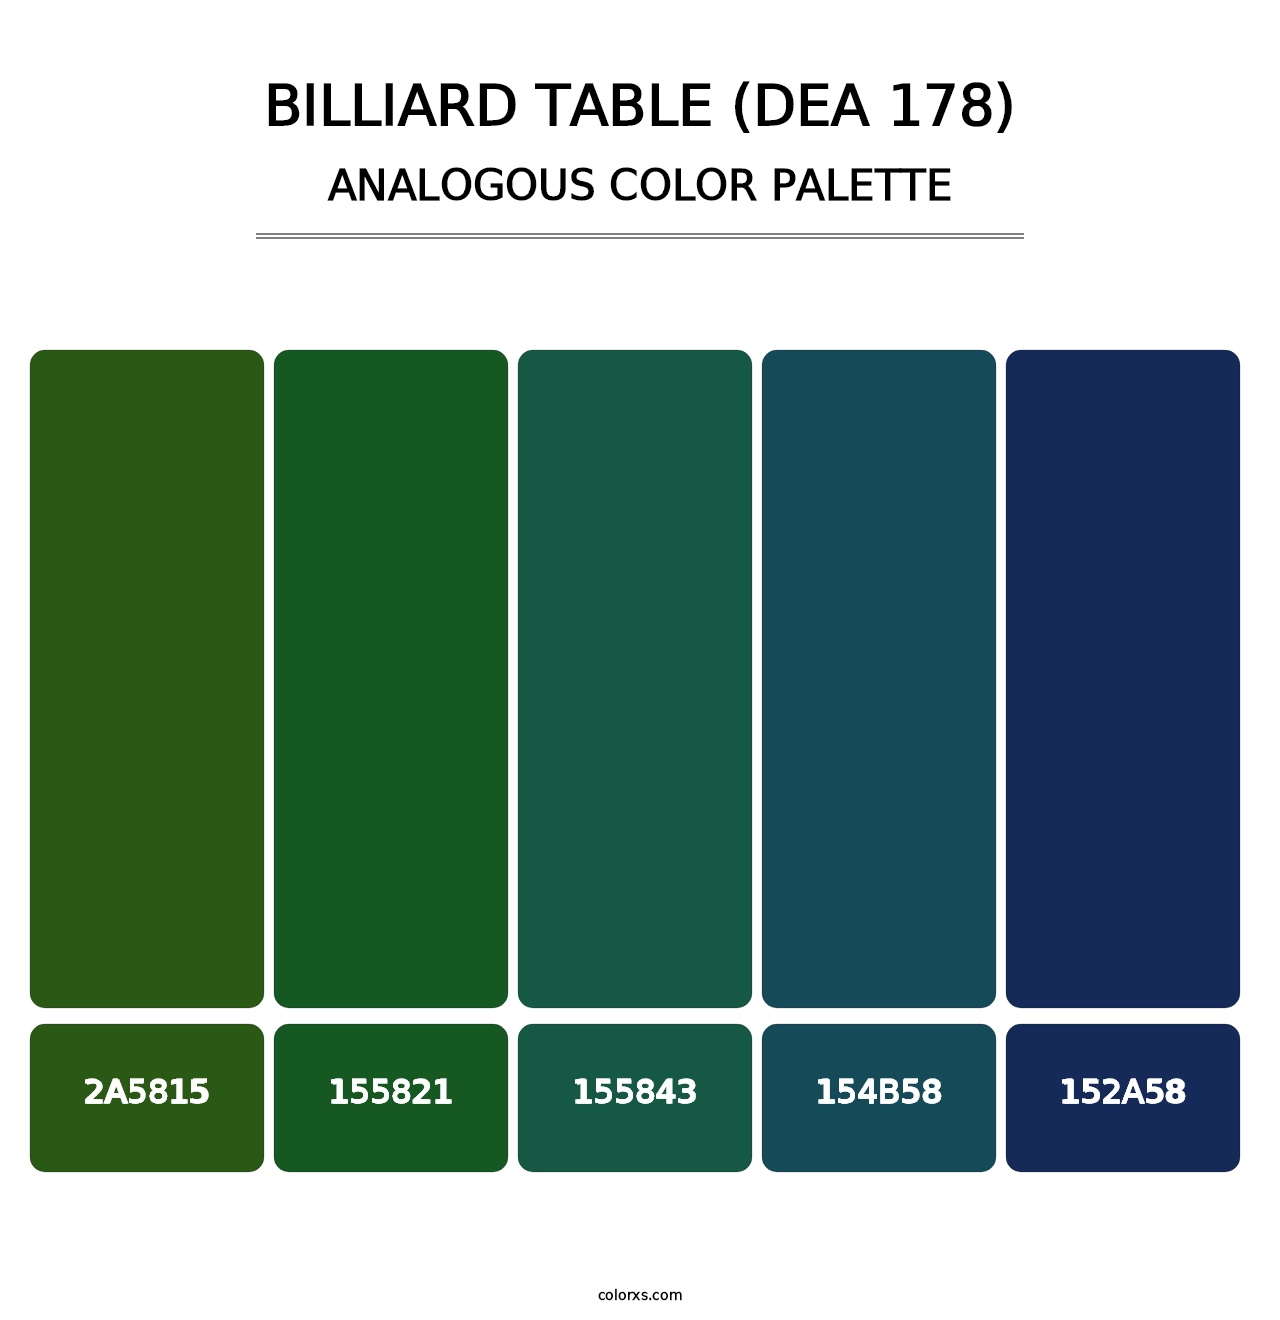 Billiard Table (DEA 178) - Analogous Color Palette